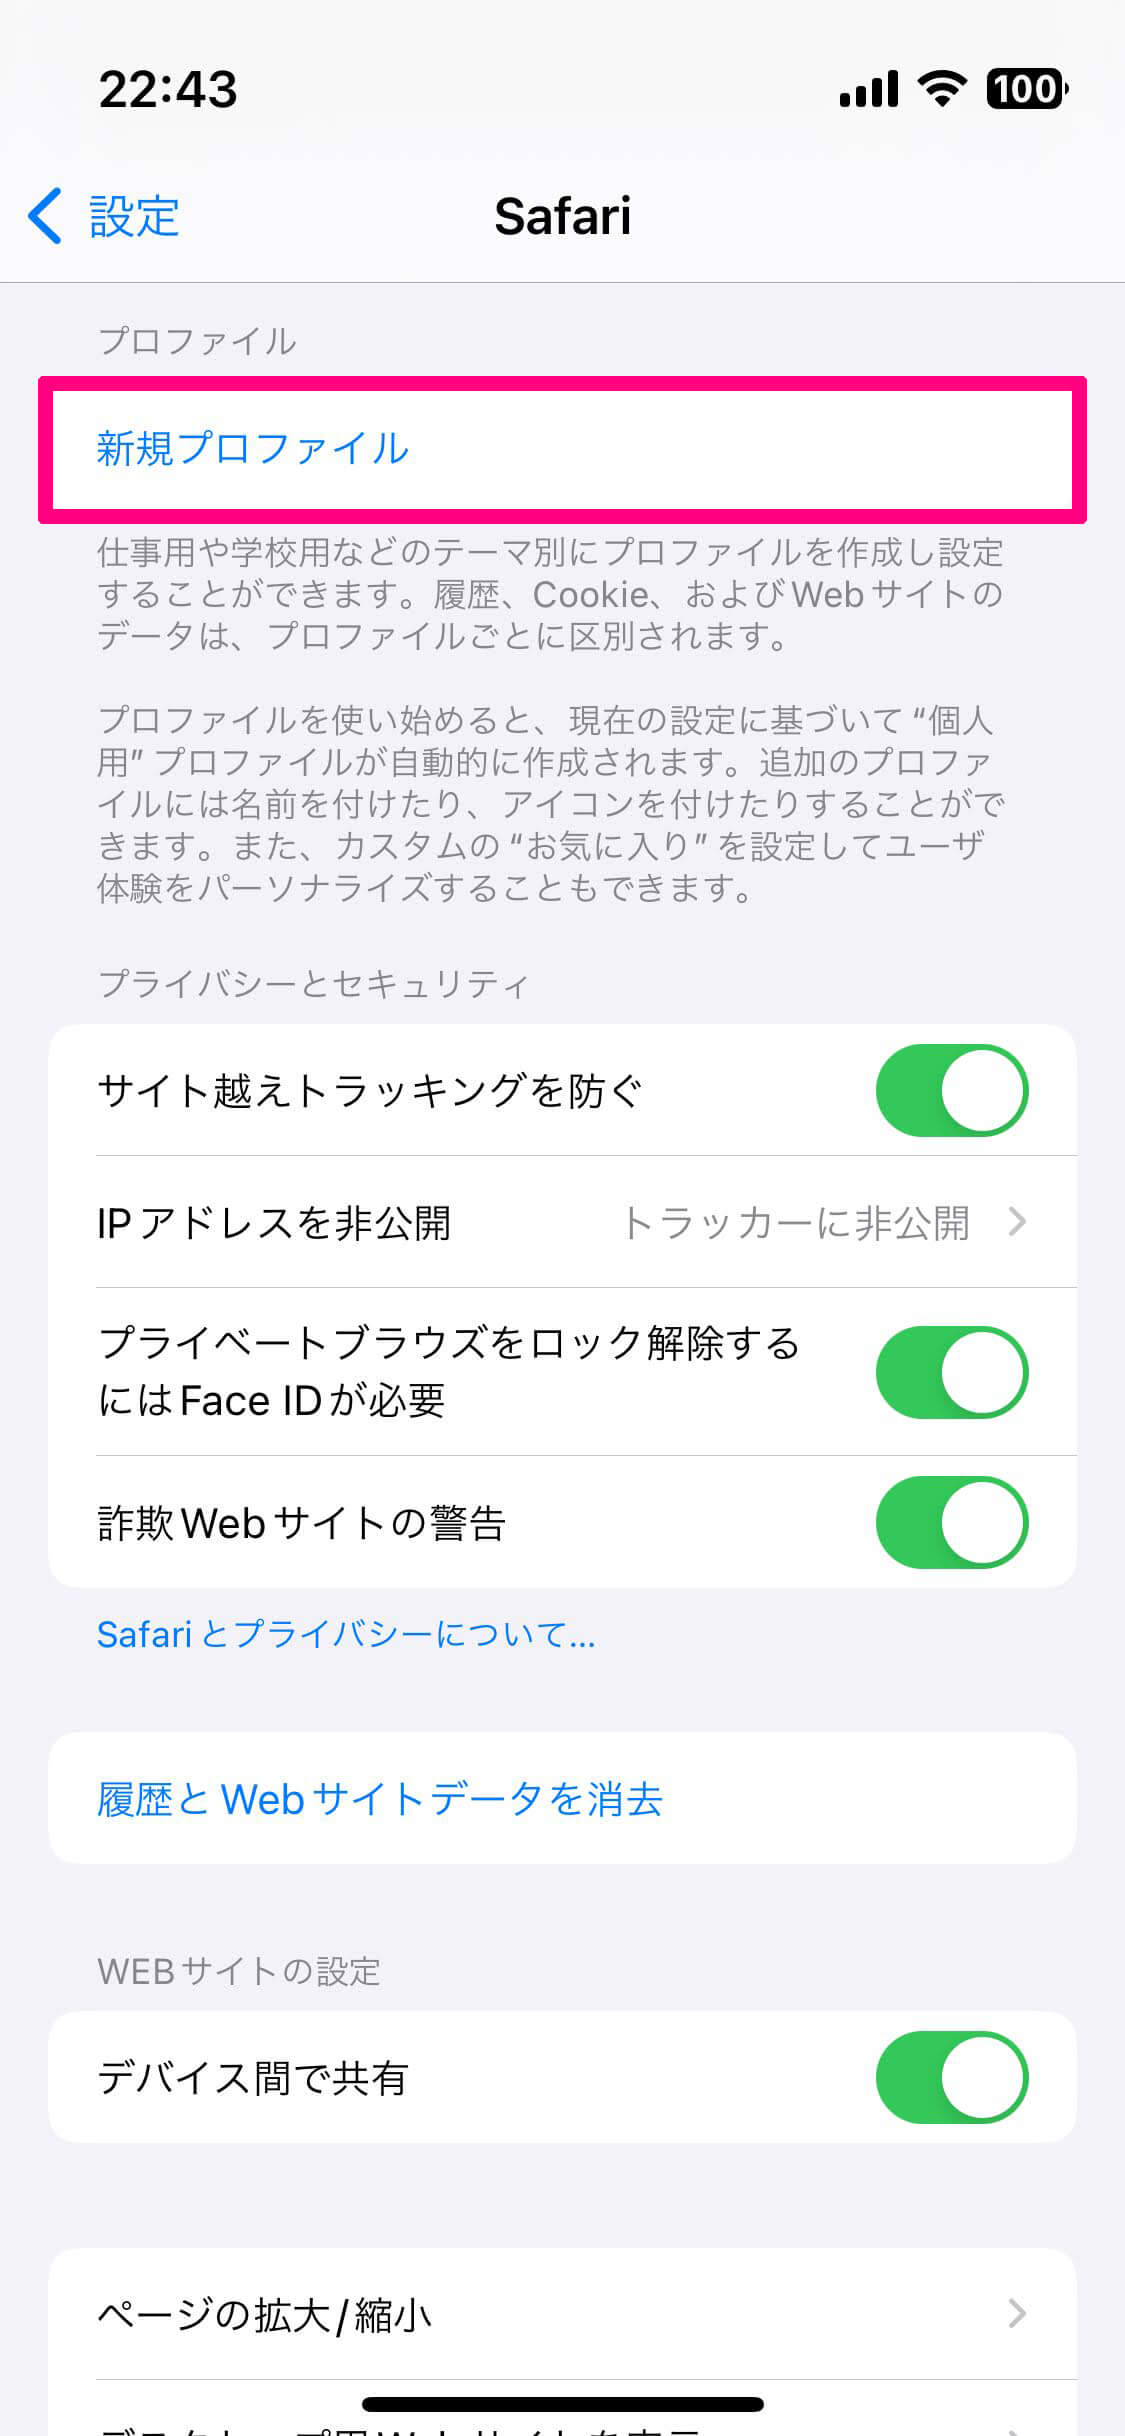 【iOS 17】iPhoneの手書きキーボードが日本語対応！ 読みがわからない漢字の入力に便利